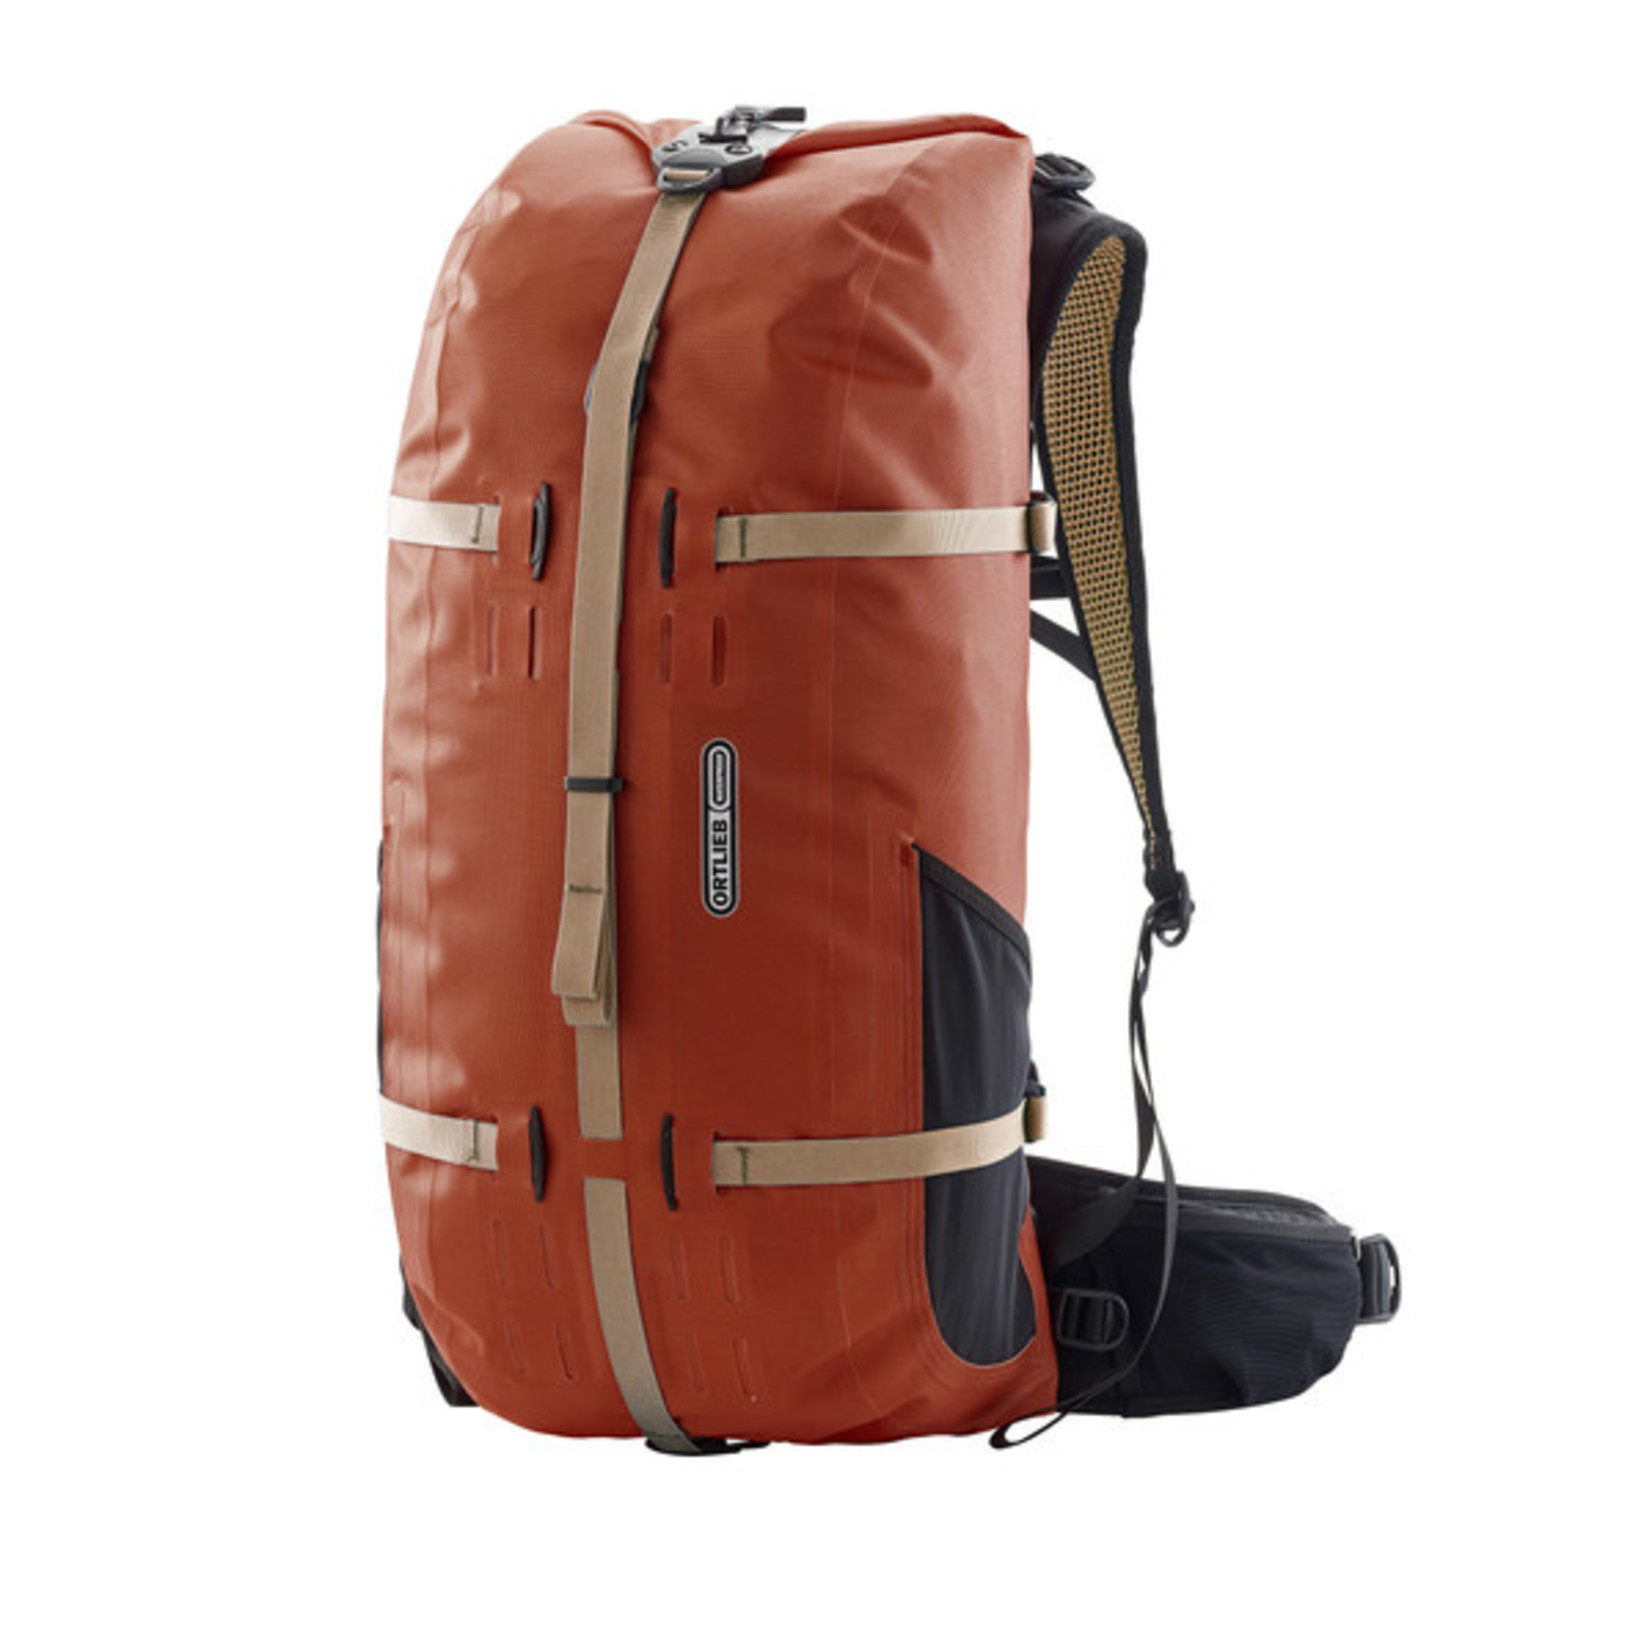 Ortlieb New Ortlieb Atrack Waterproof Backpack  Travel Bag R7055 - 35L - Rooibos